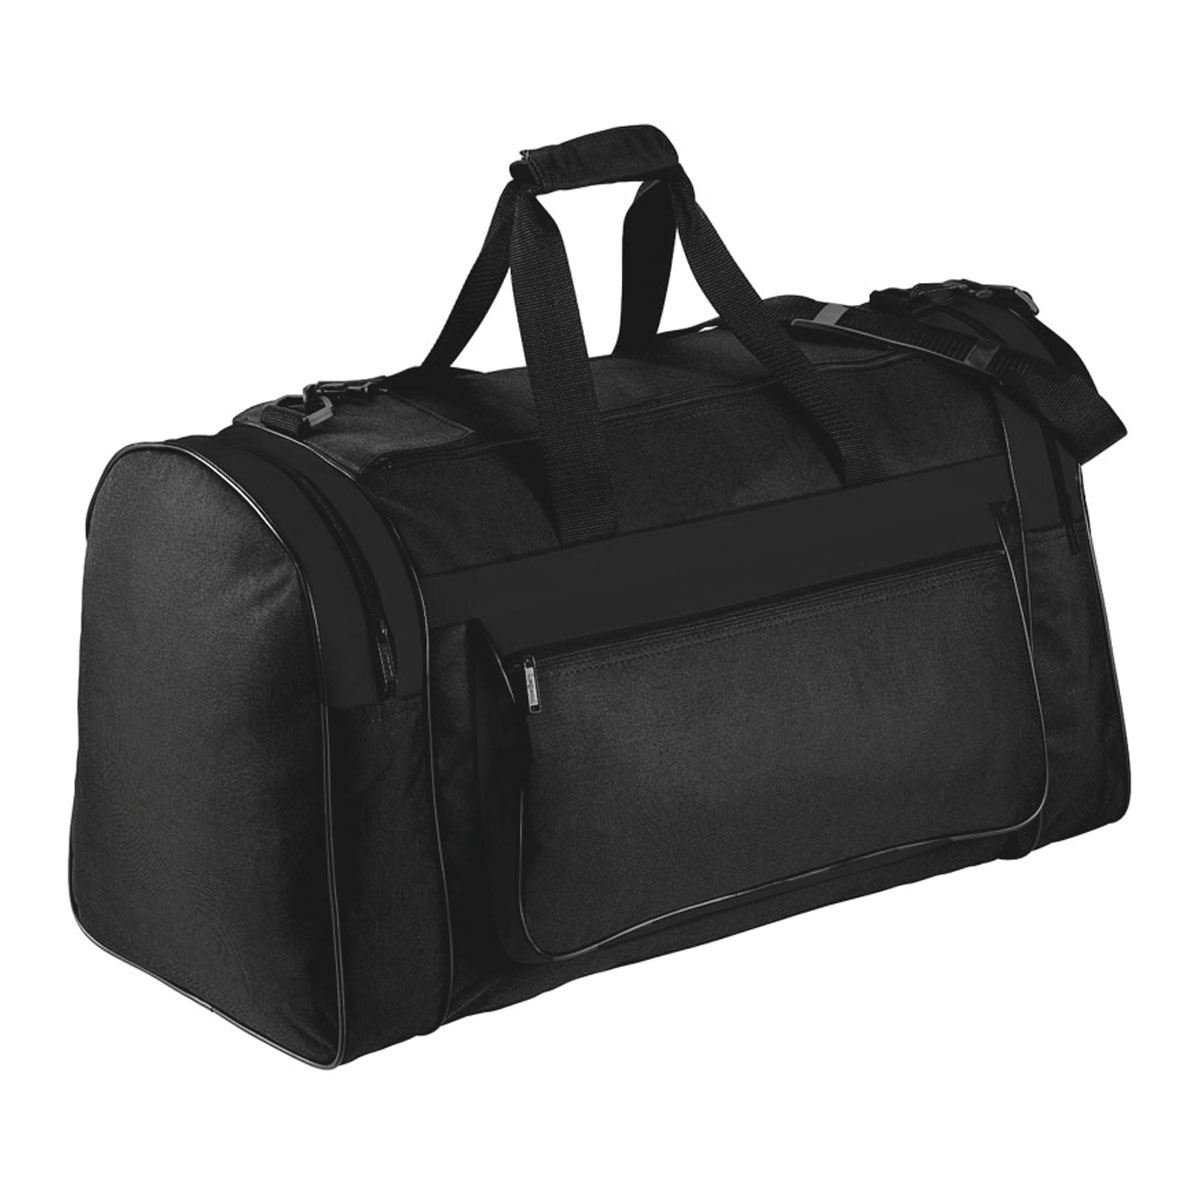 Magnum Sports Bag | cheap duffle bags online | cheap bags | cheap ...